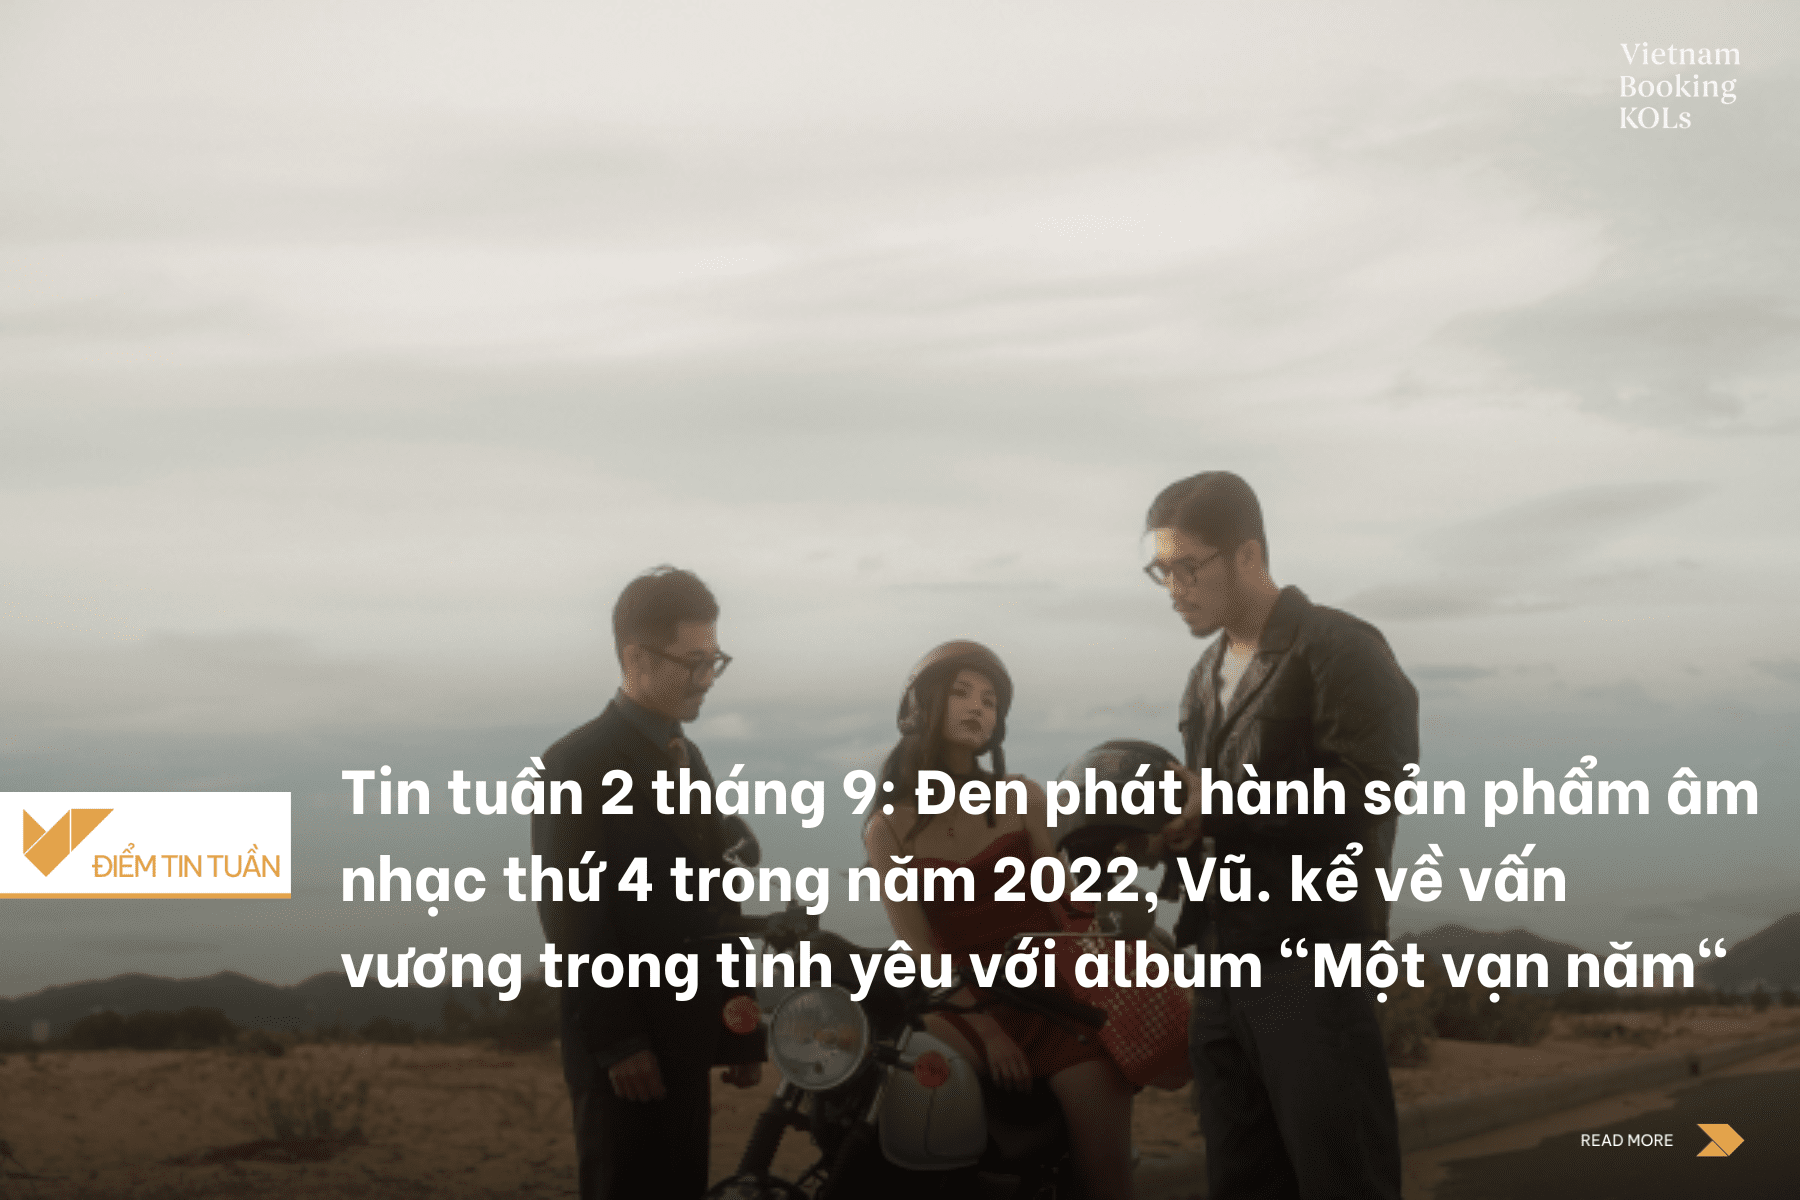 Tin tuần 2 tháng 9: Đen phát hành sản phẩm âm nhạc thứ 4 trong năm 2022, Vũ. kể về vấn vương trong tình yêu với album "Một vạn năm"